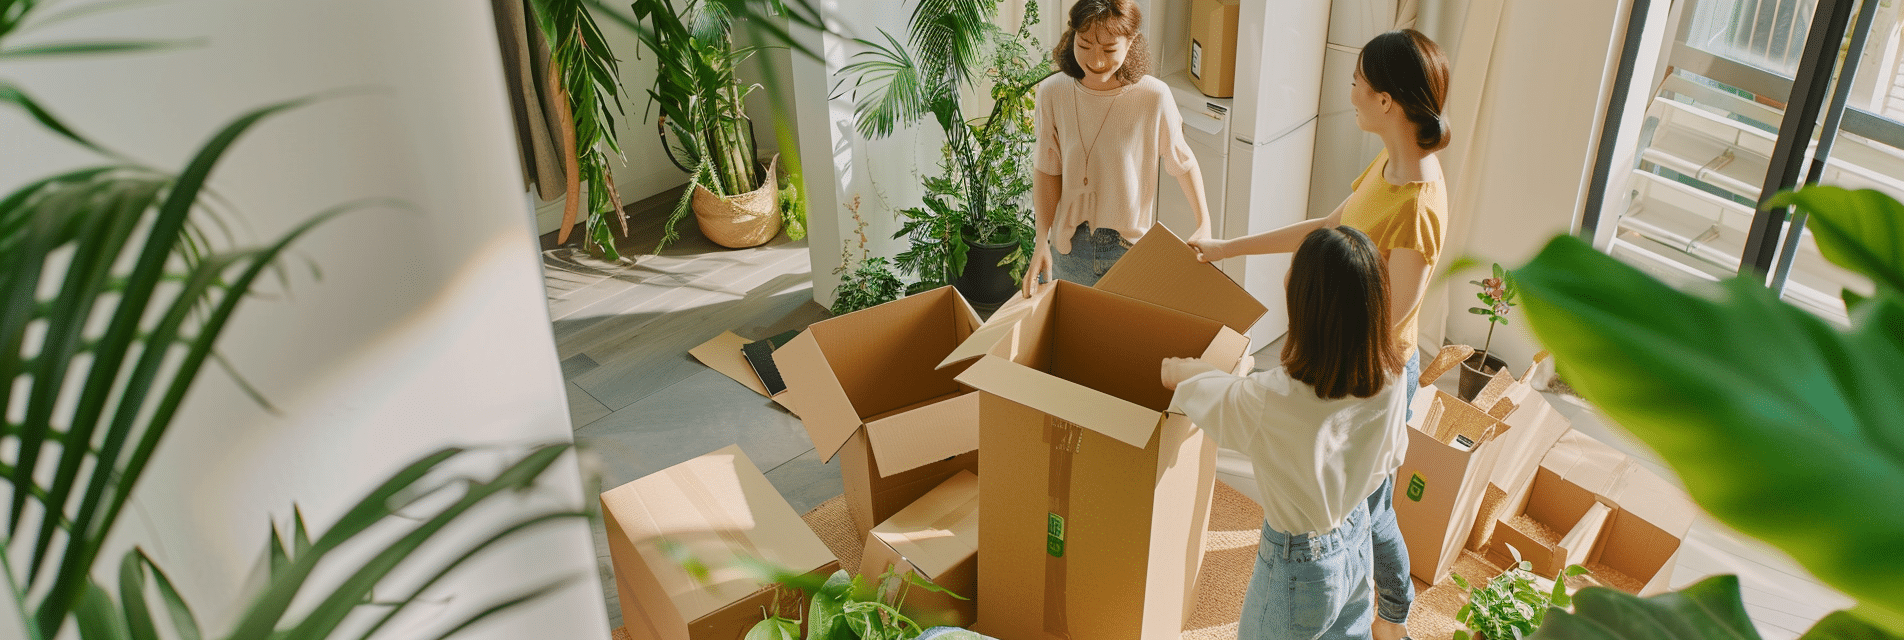 Famille préparant un déménagement écologique avec cartons recyclés.